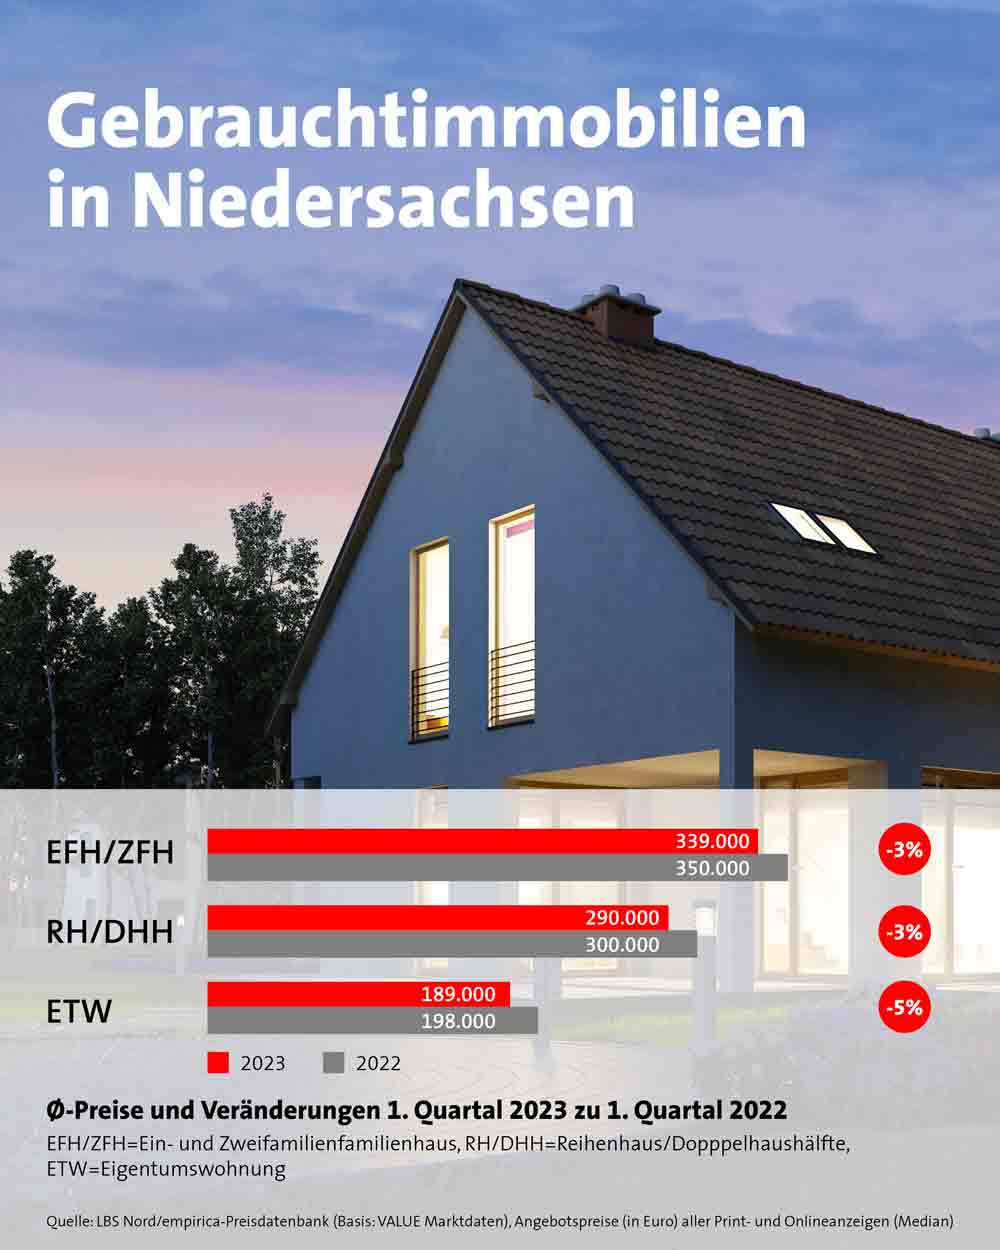 Sinkende Immobilienpreise in Niedersachsen, gebrauchte Häuser und Wohnungen werden günstiger